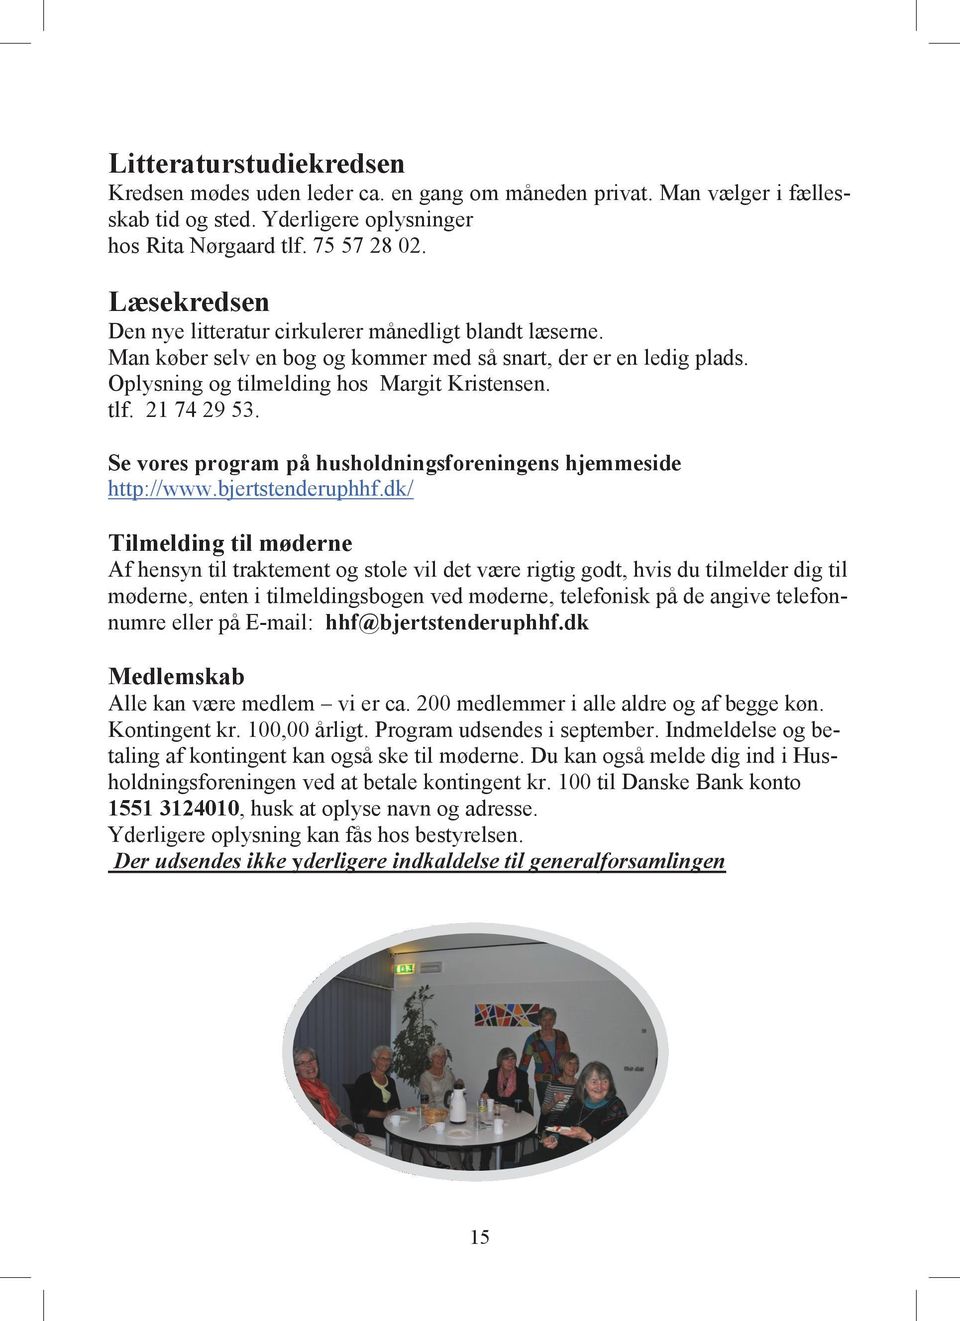 21 74 29 53. Se vores program på husholdningsforeningens hjemmeside http://www.bjertstenderuphhf.